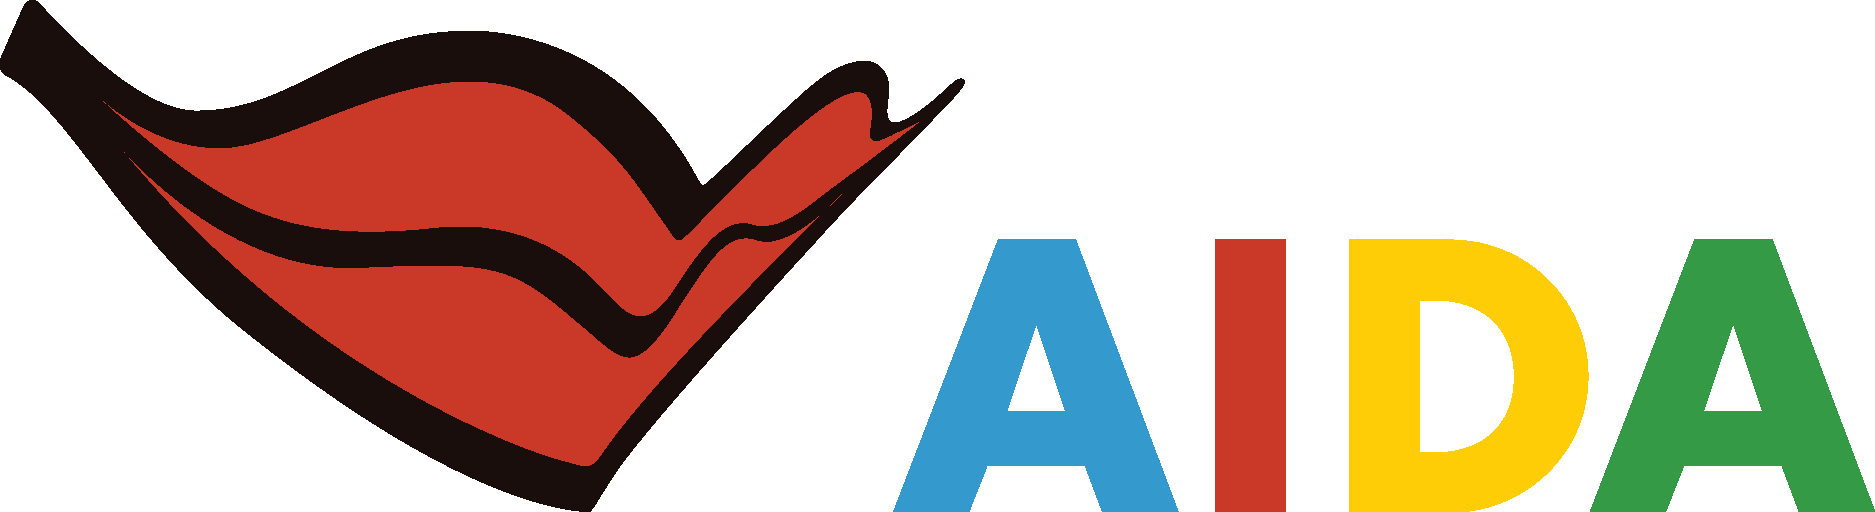 AIDA Cruises Logo Vector - (.Ai .PNG .SVG .EPS Free Download)